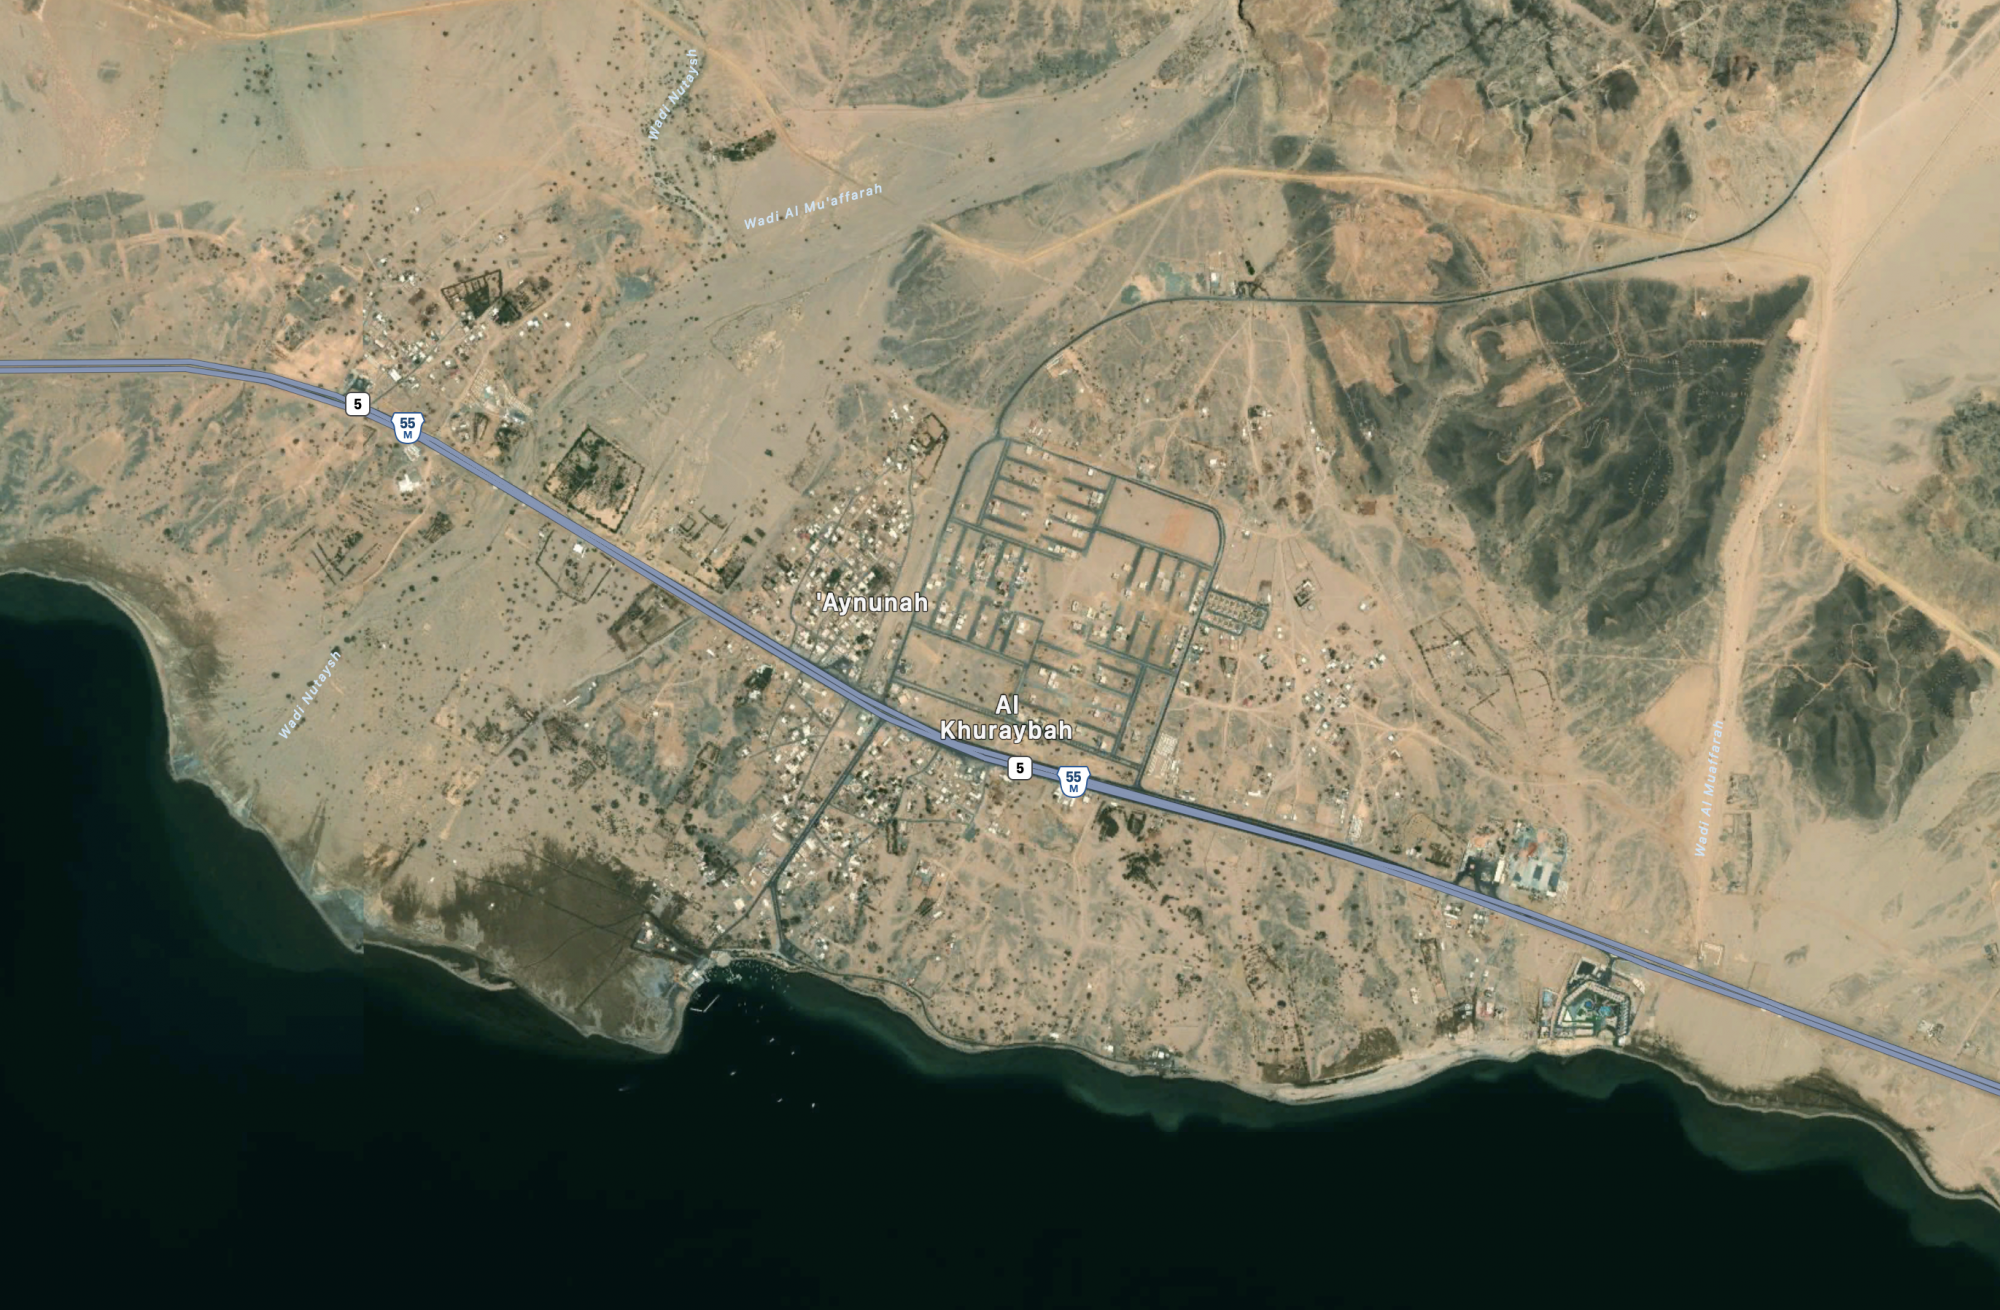 A The Line közelében található al-Khuraybah település a kitelepítés előtt